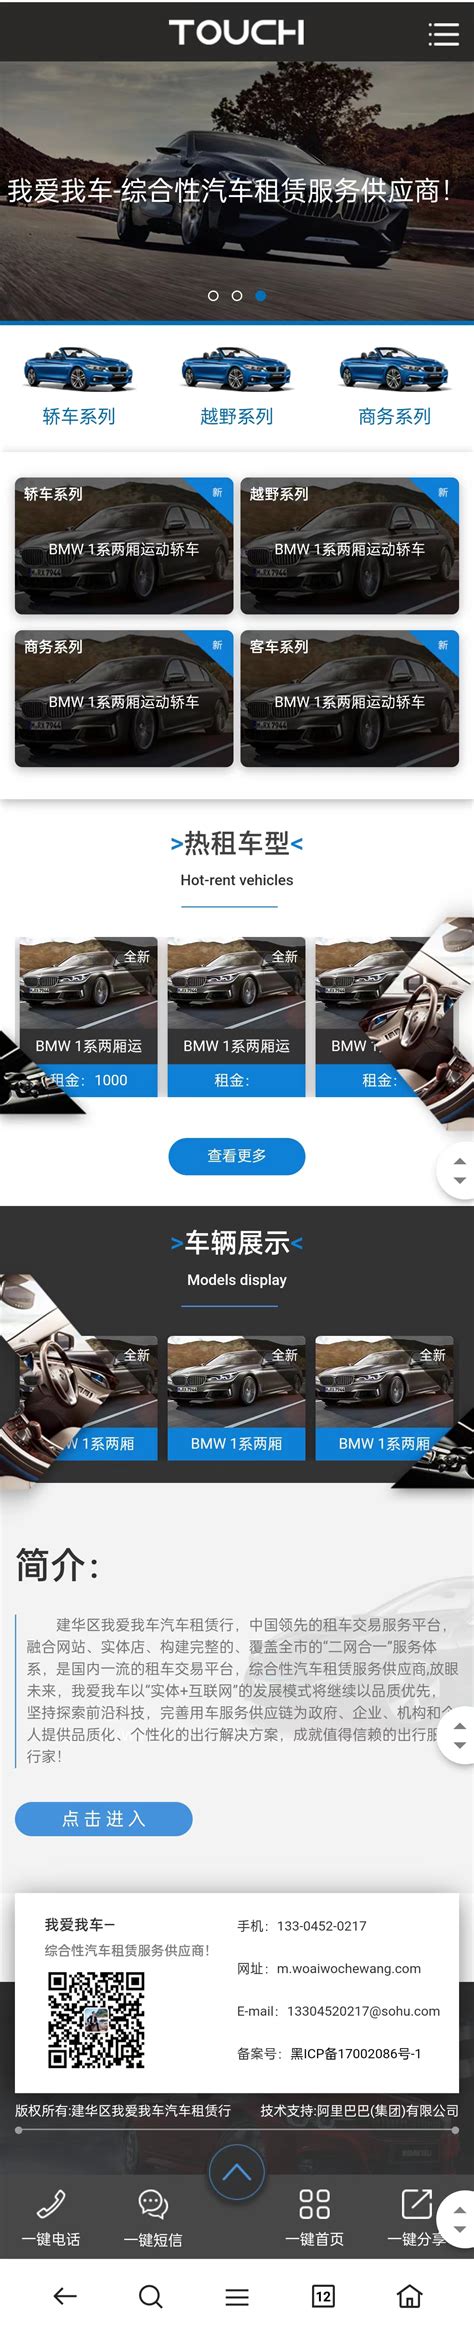 南京汽车企业网站建设